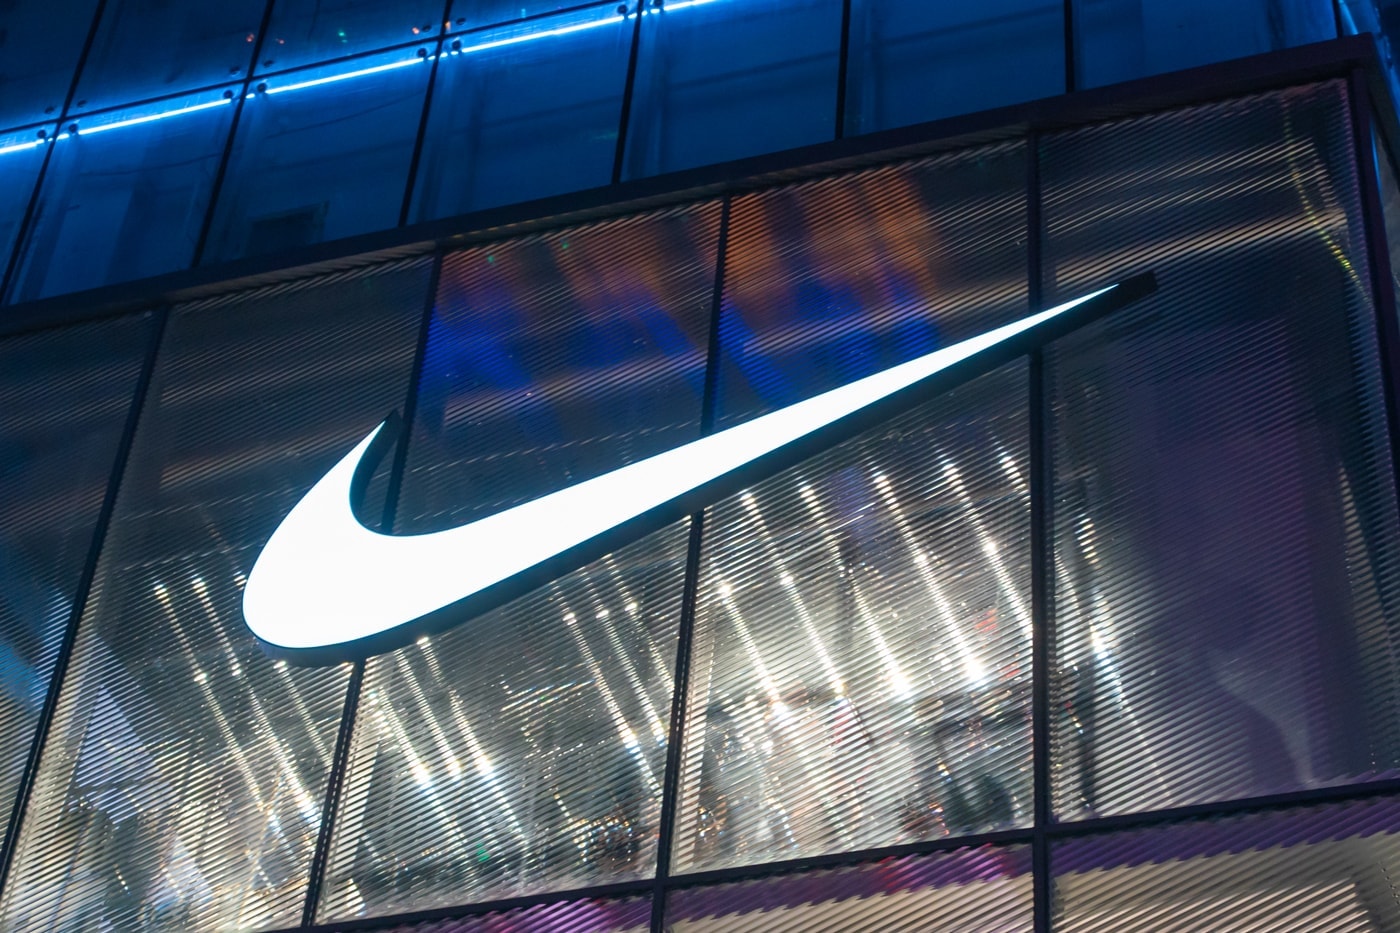 ナイキが“世界で最も人気のあるスニーカーブランド”のトップに輝く Industry Report Indicates That Nike Is the World's Most Popular Sneaker Brand statista industry report jordan brand sketchers adidas vans moonstar converse new balance